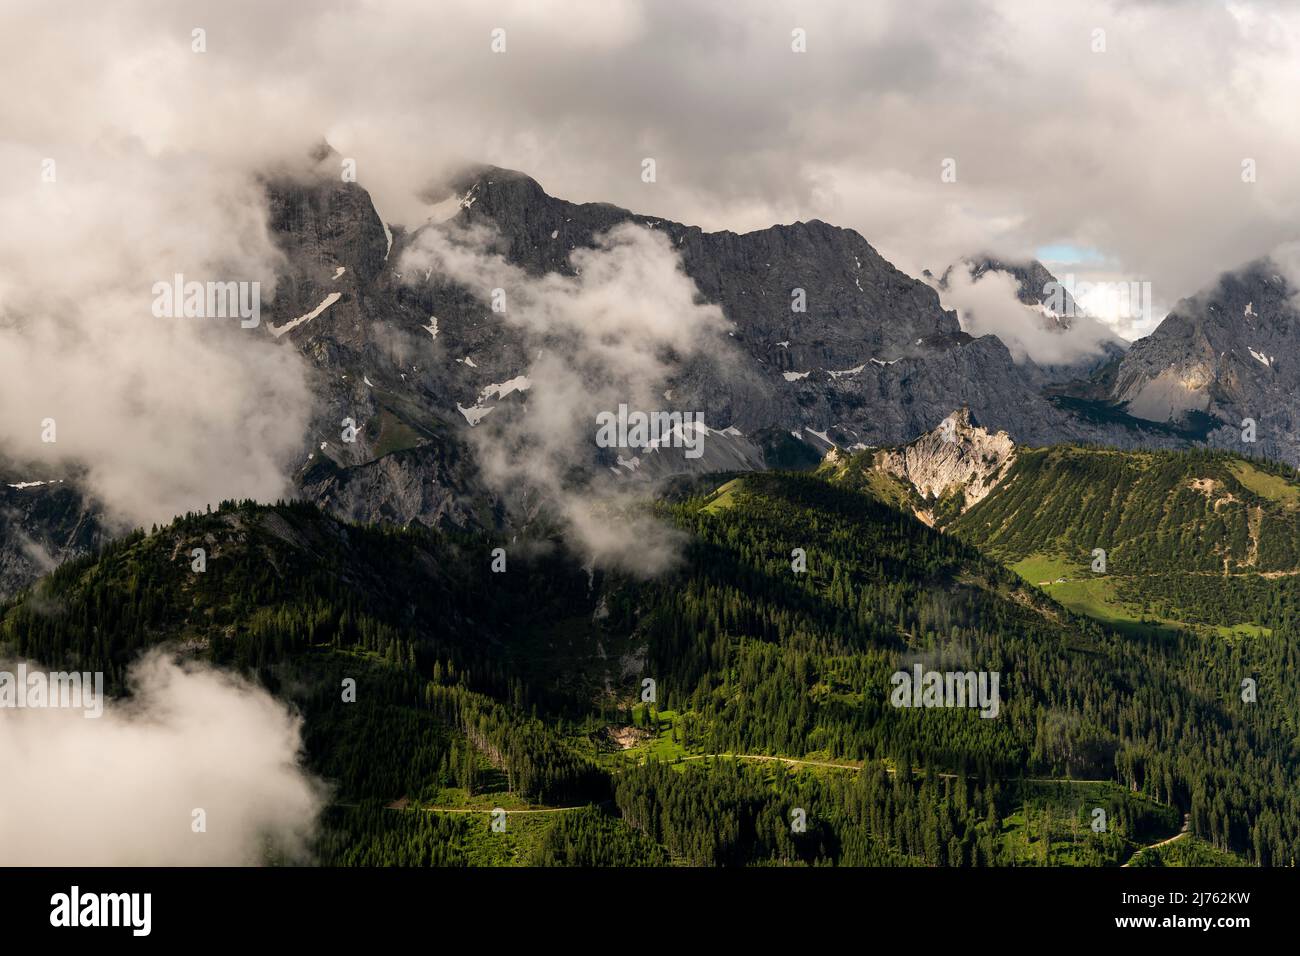 La Rappenklammspitze nella Valle del Rodano nel Karwendel vicino Hinterriss nelle Alpi tirolesi brilla nella luce del pomeriggio, mentre dense nubi basse si raccolgono e le alte pareti della catena del Karwendel settentrionale si innalzano sullo sfondo. Foto Stock